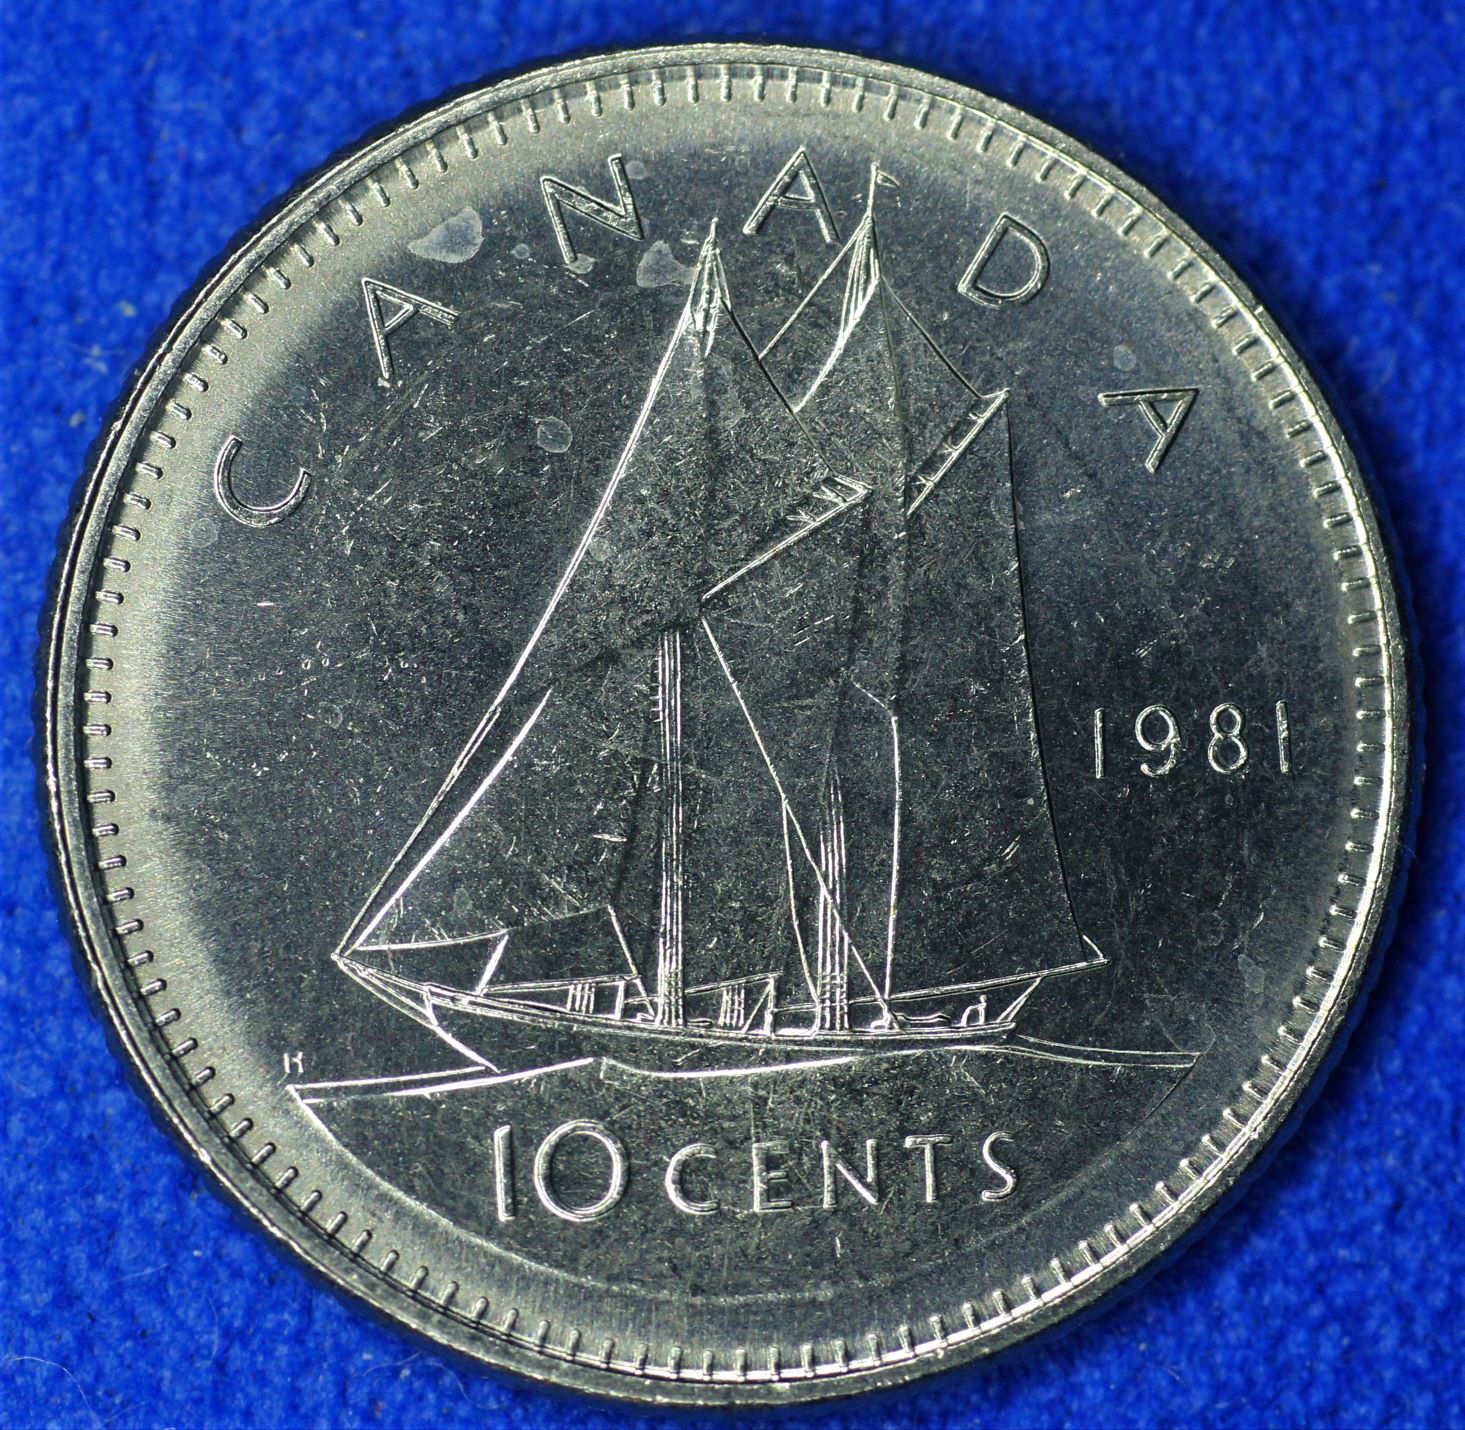 10 ¢ 1981-rev-a.JPG